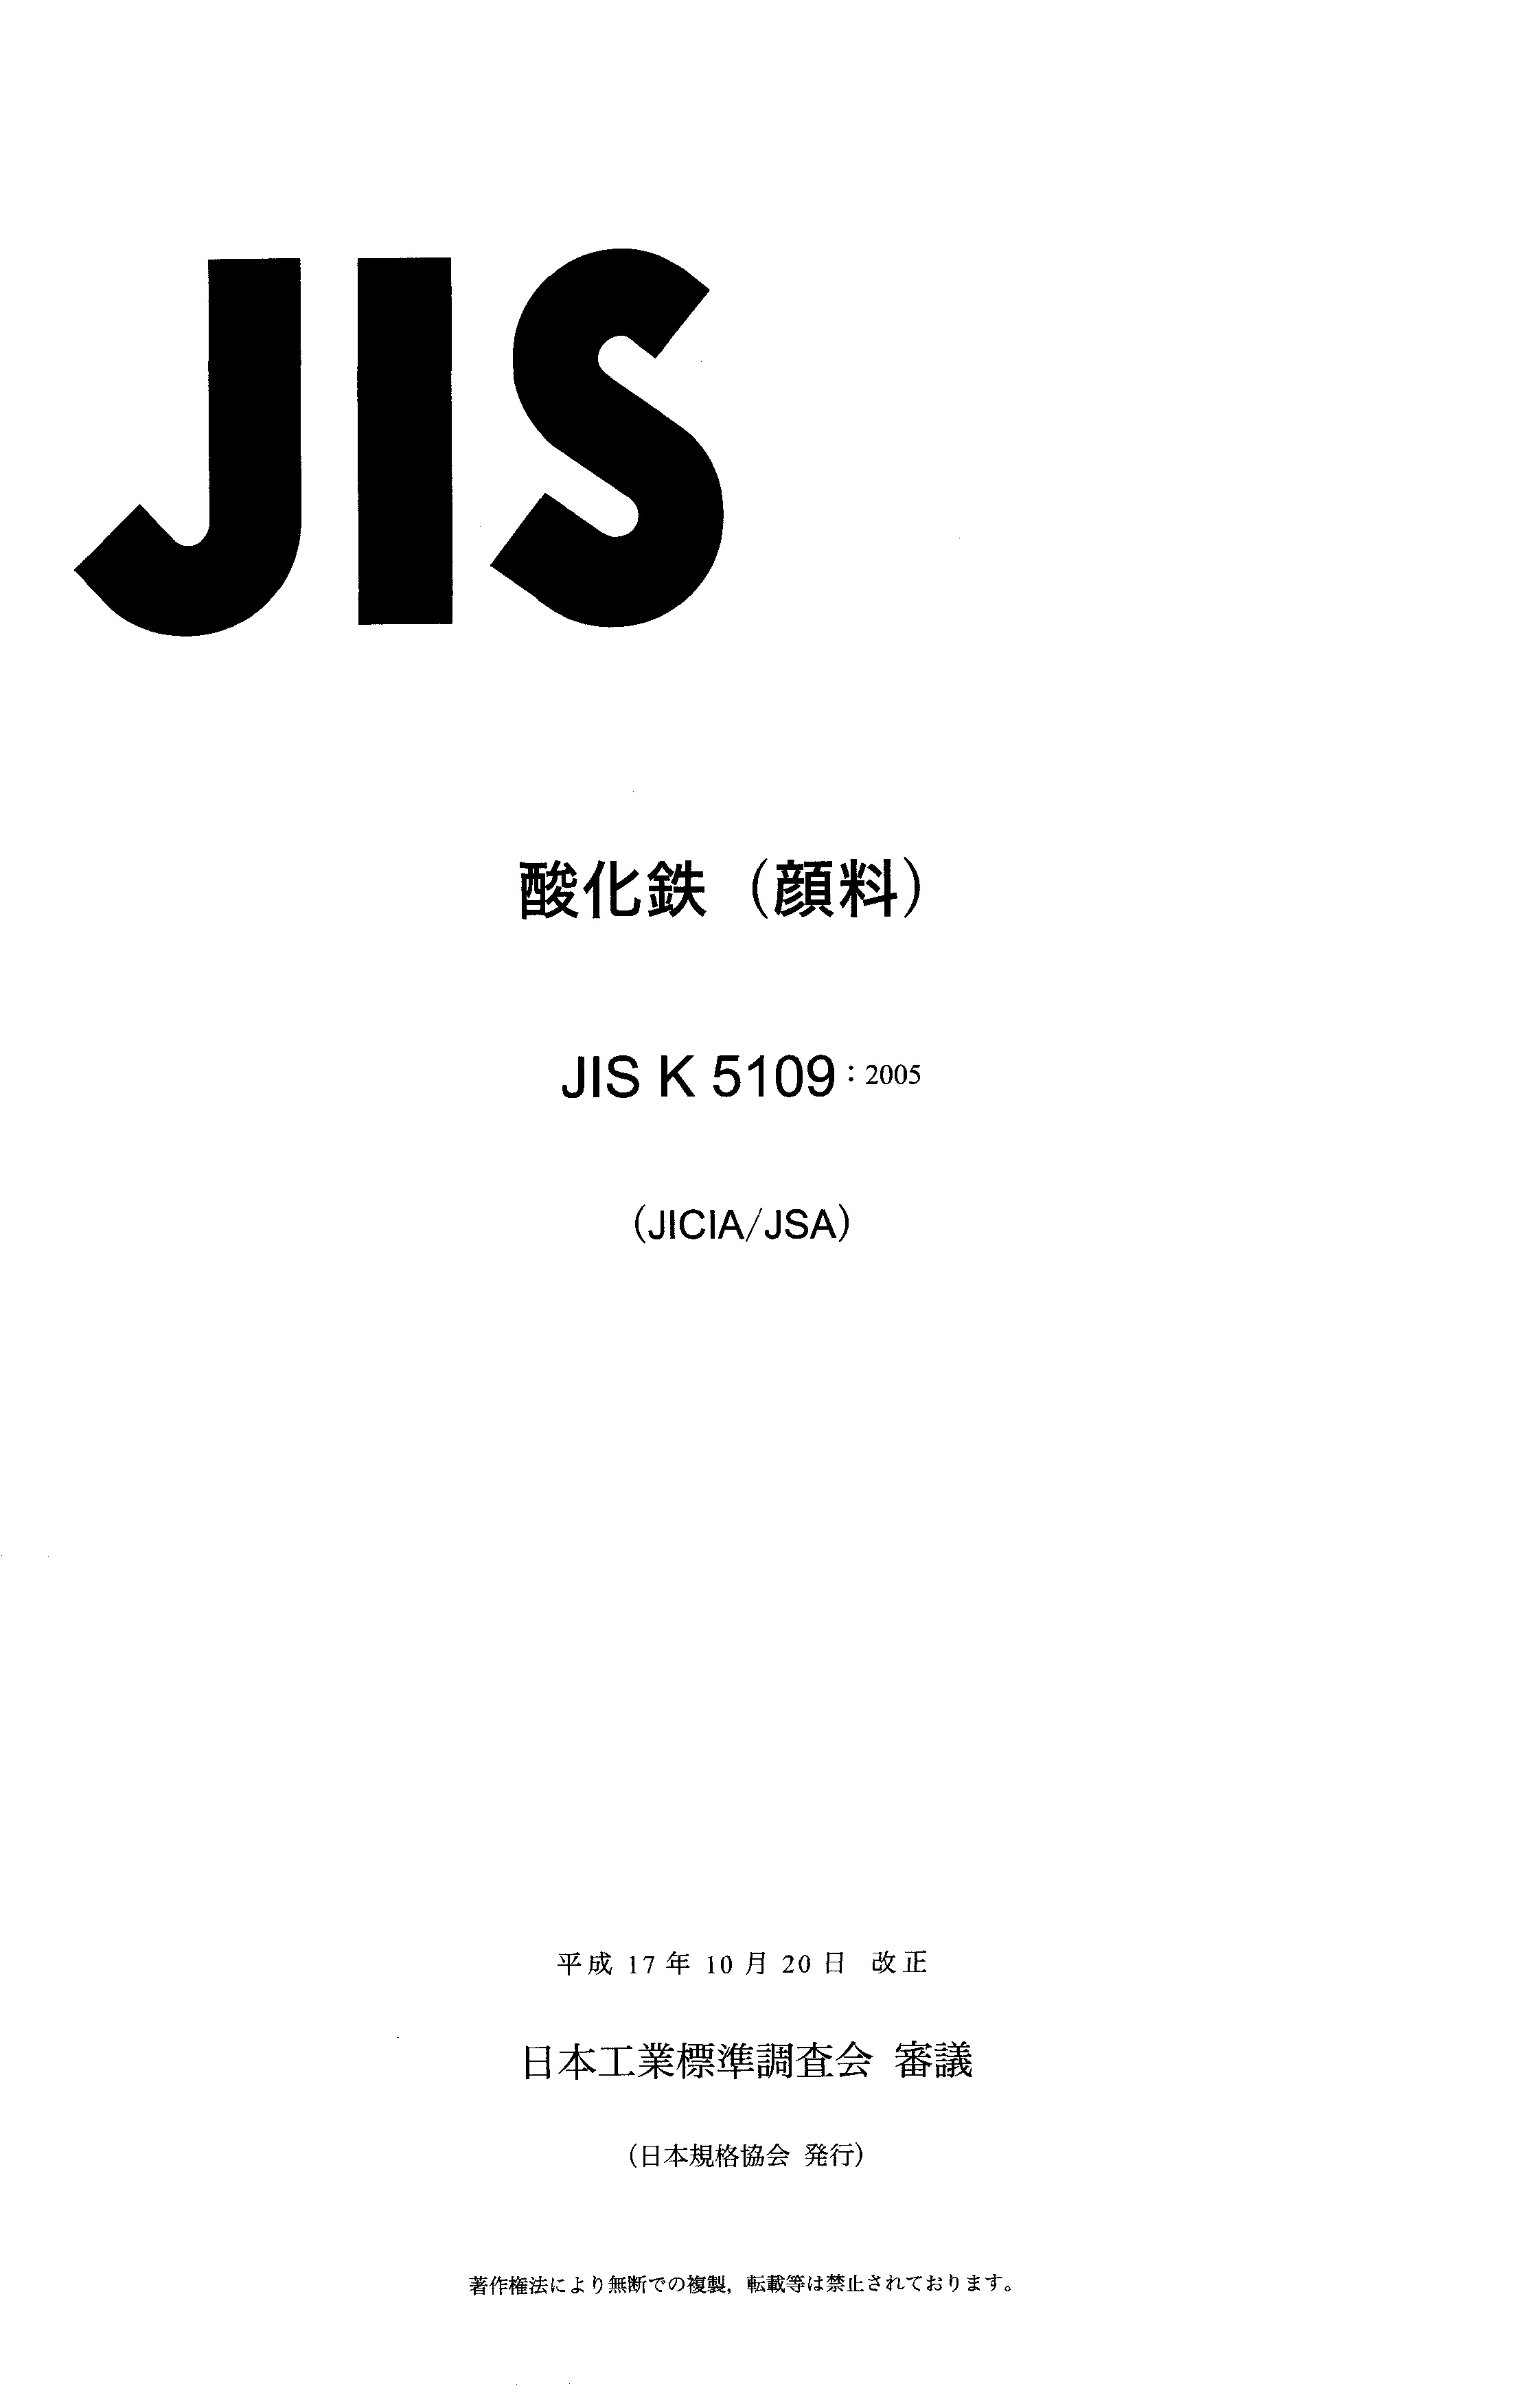 JIS K 5109:2005封面图